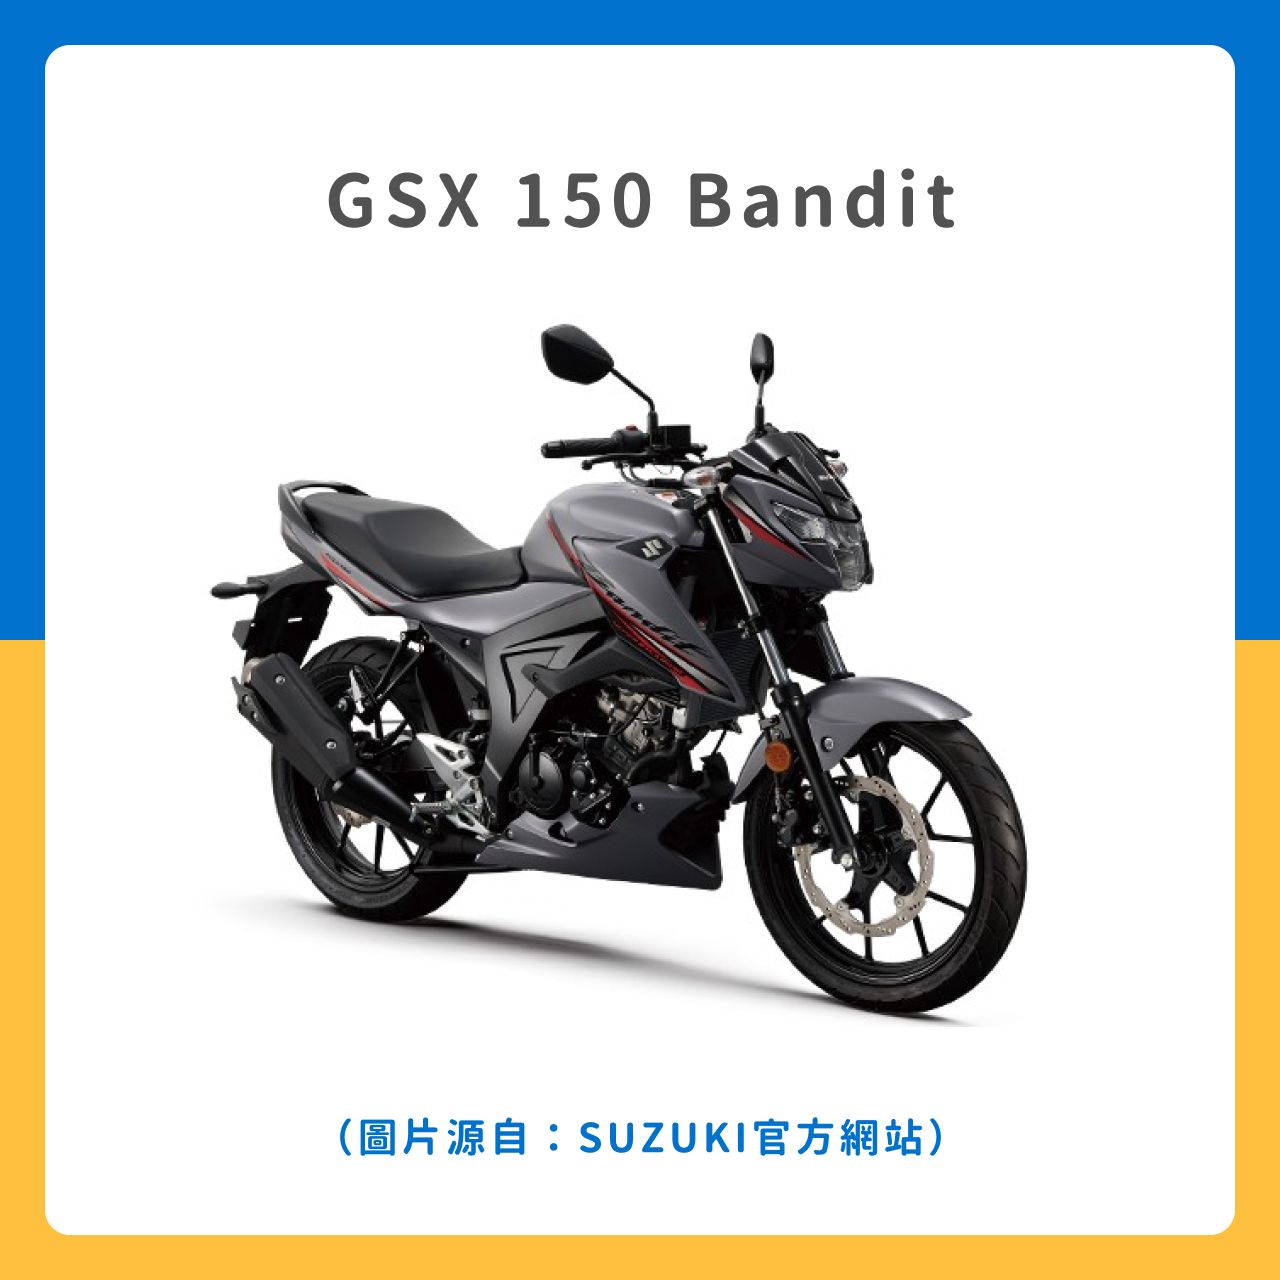 GSX 150 Bandit